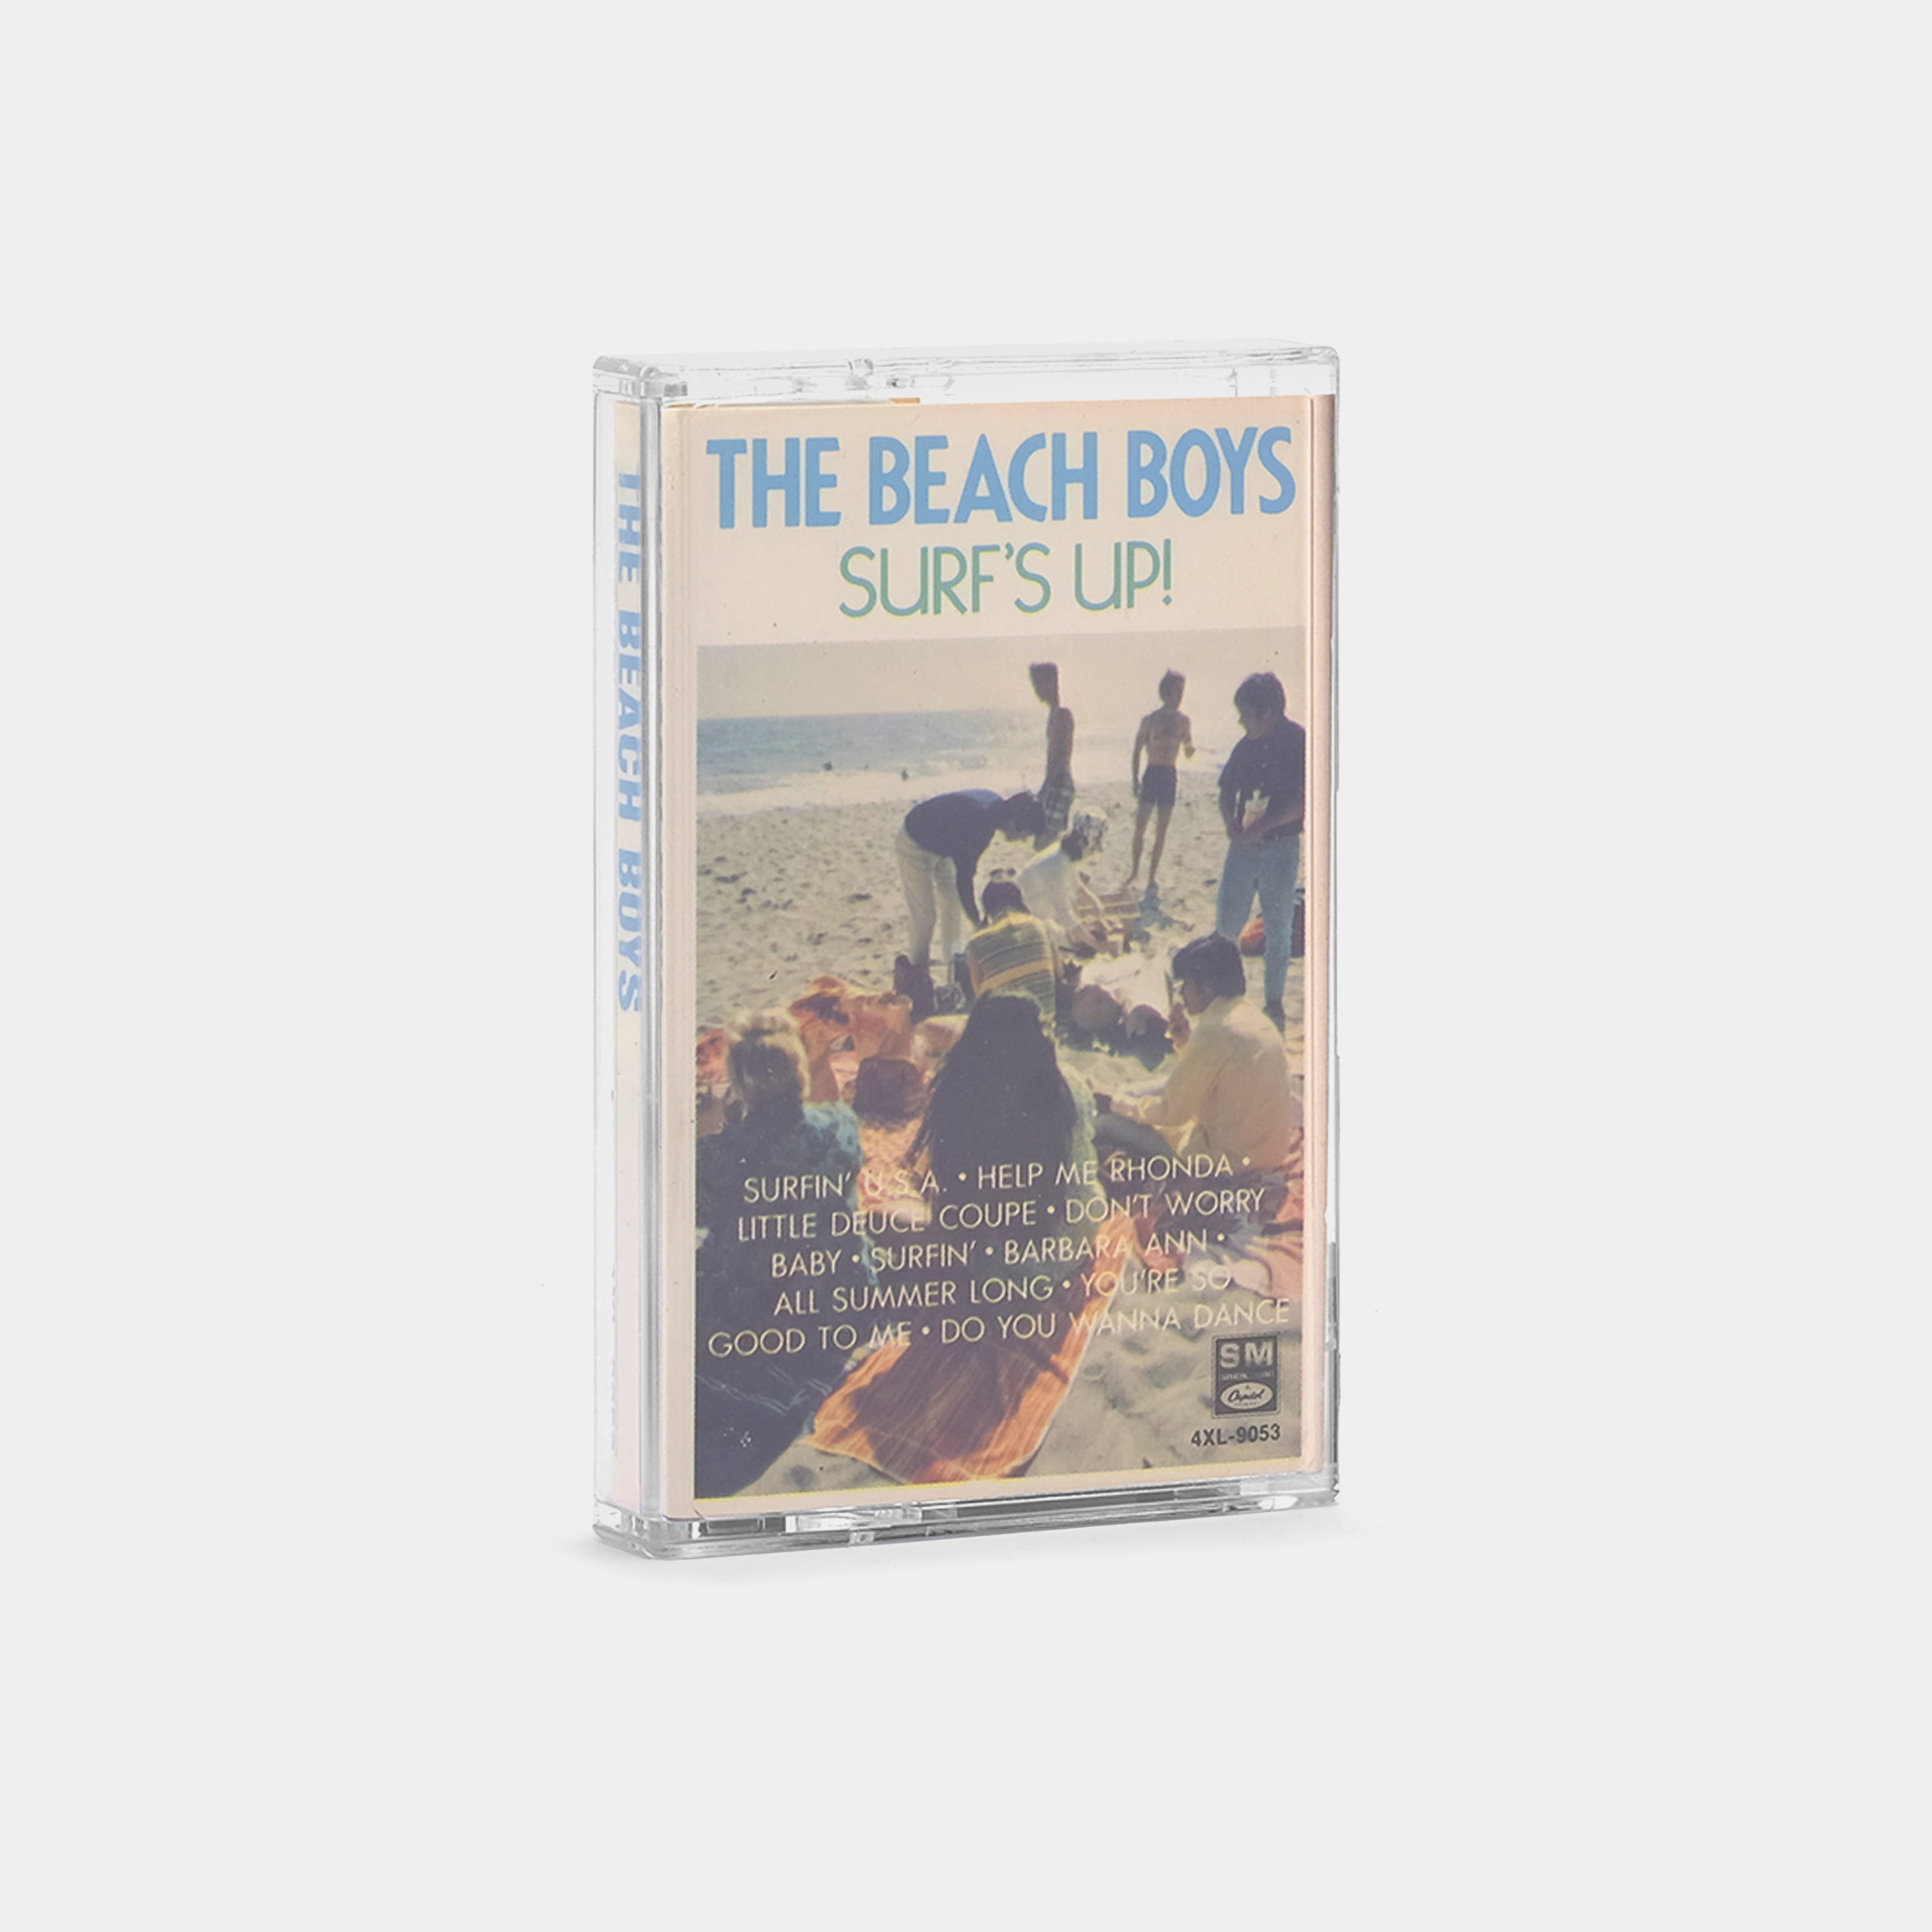 The Beach Boys - Surfs Up! Cassette Tape